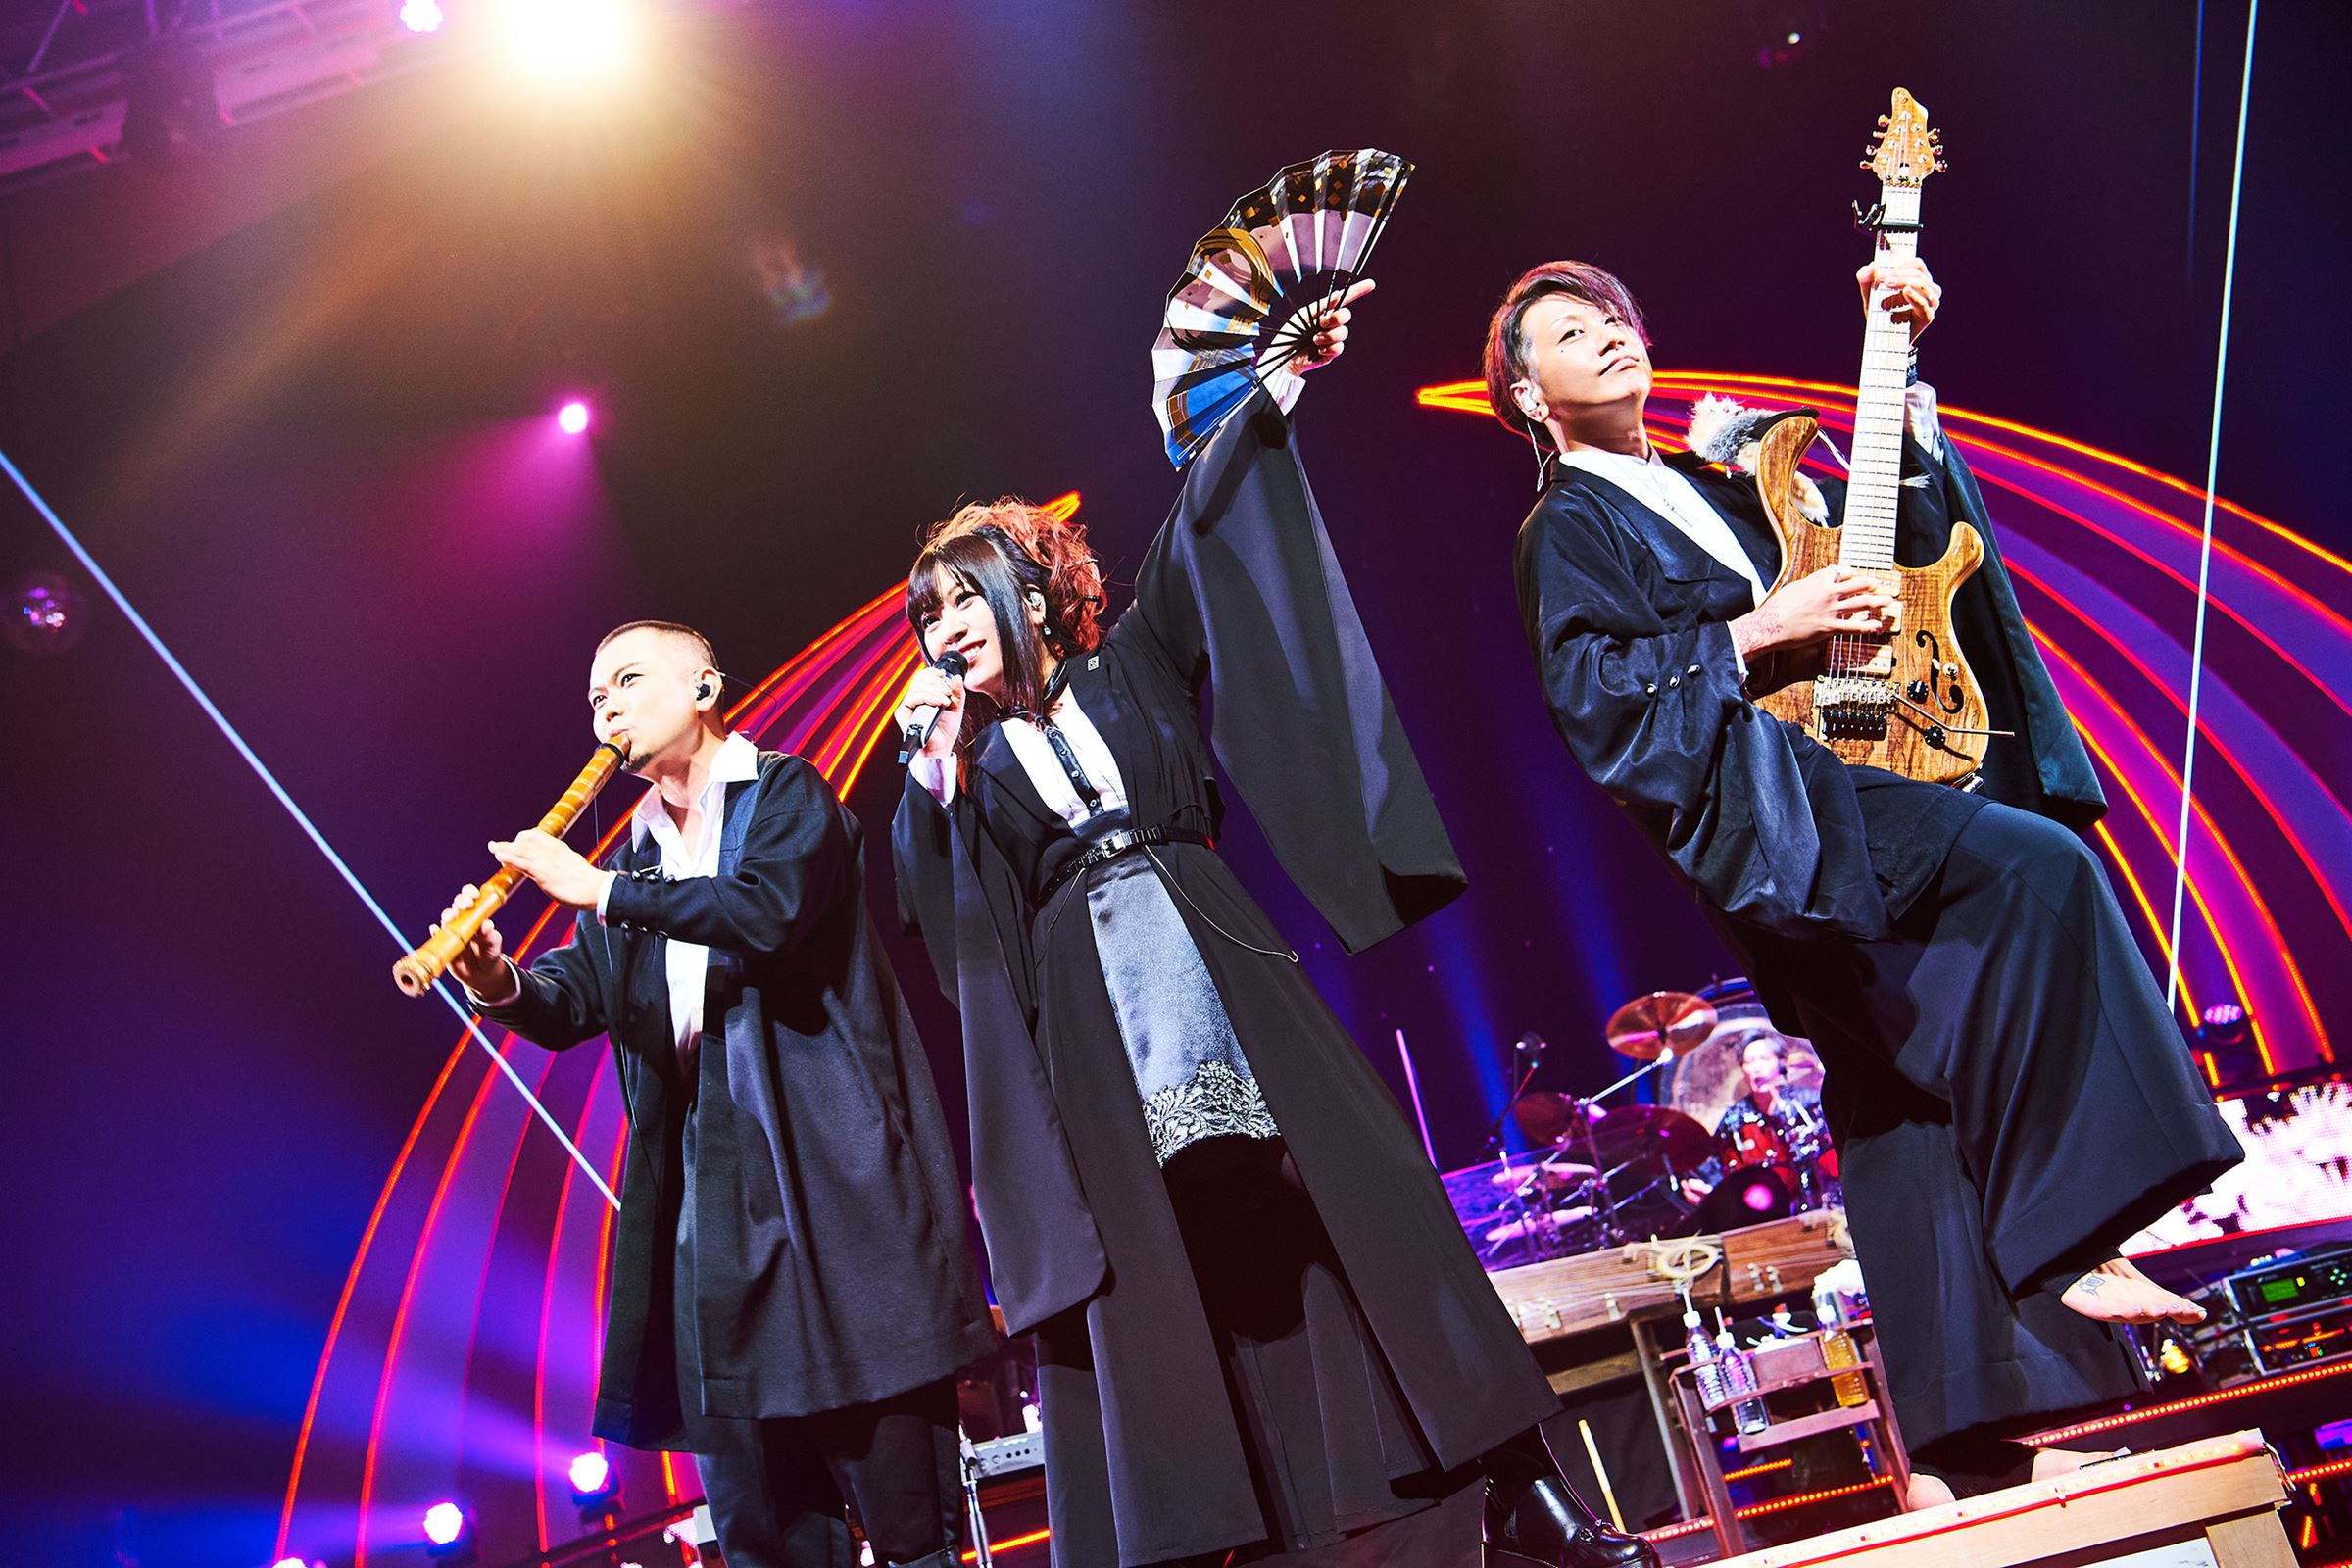 『和楽器バンド 8th Anniversary Japan Tour ∞ - Infinity –』パシフィコ横浜 国立大ホール公演より